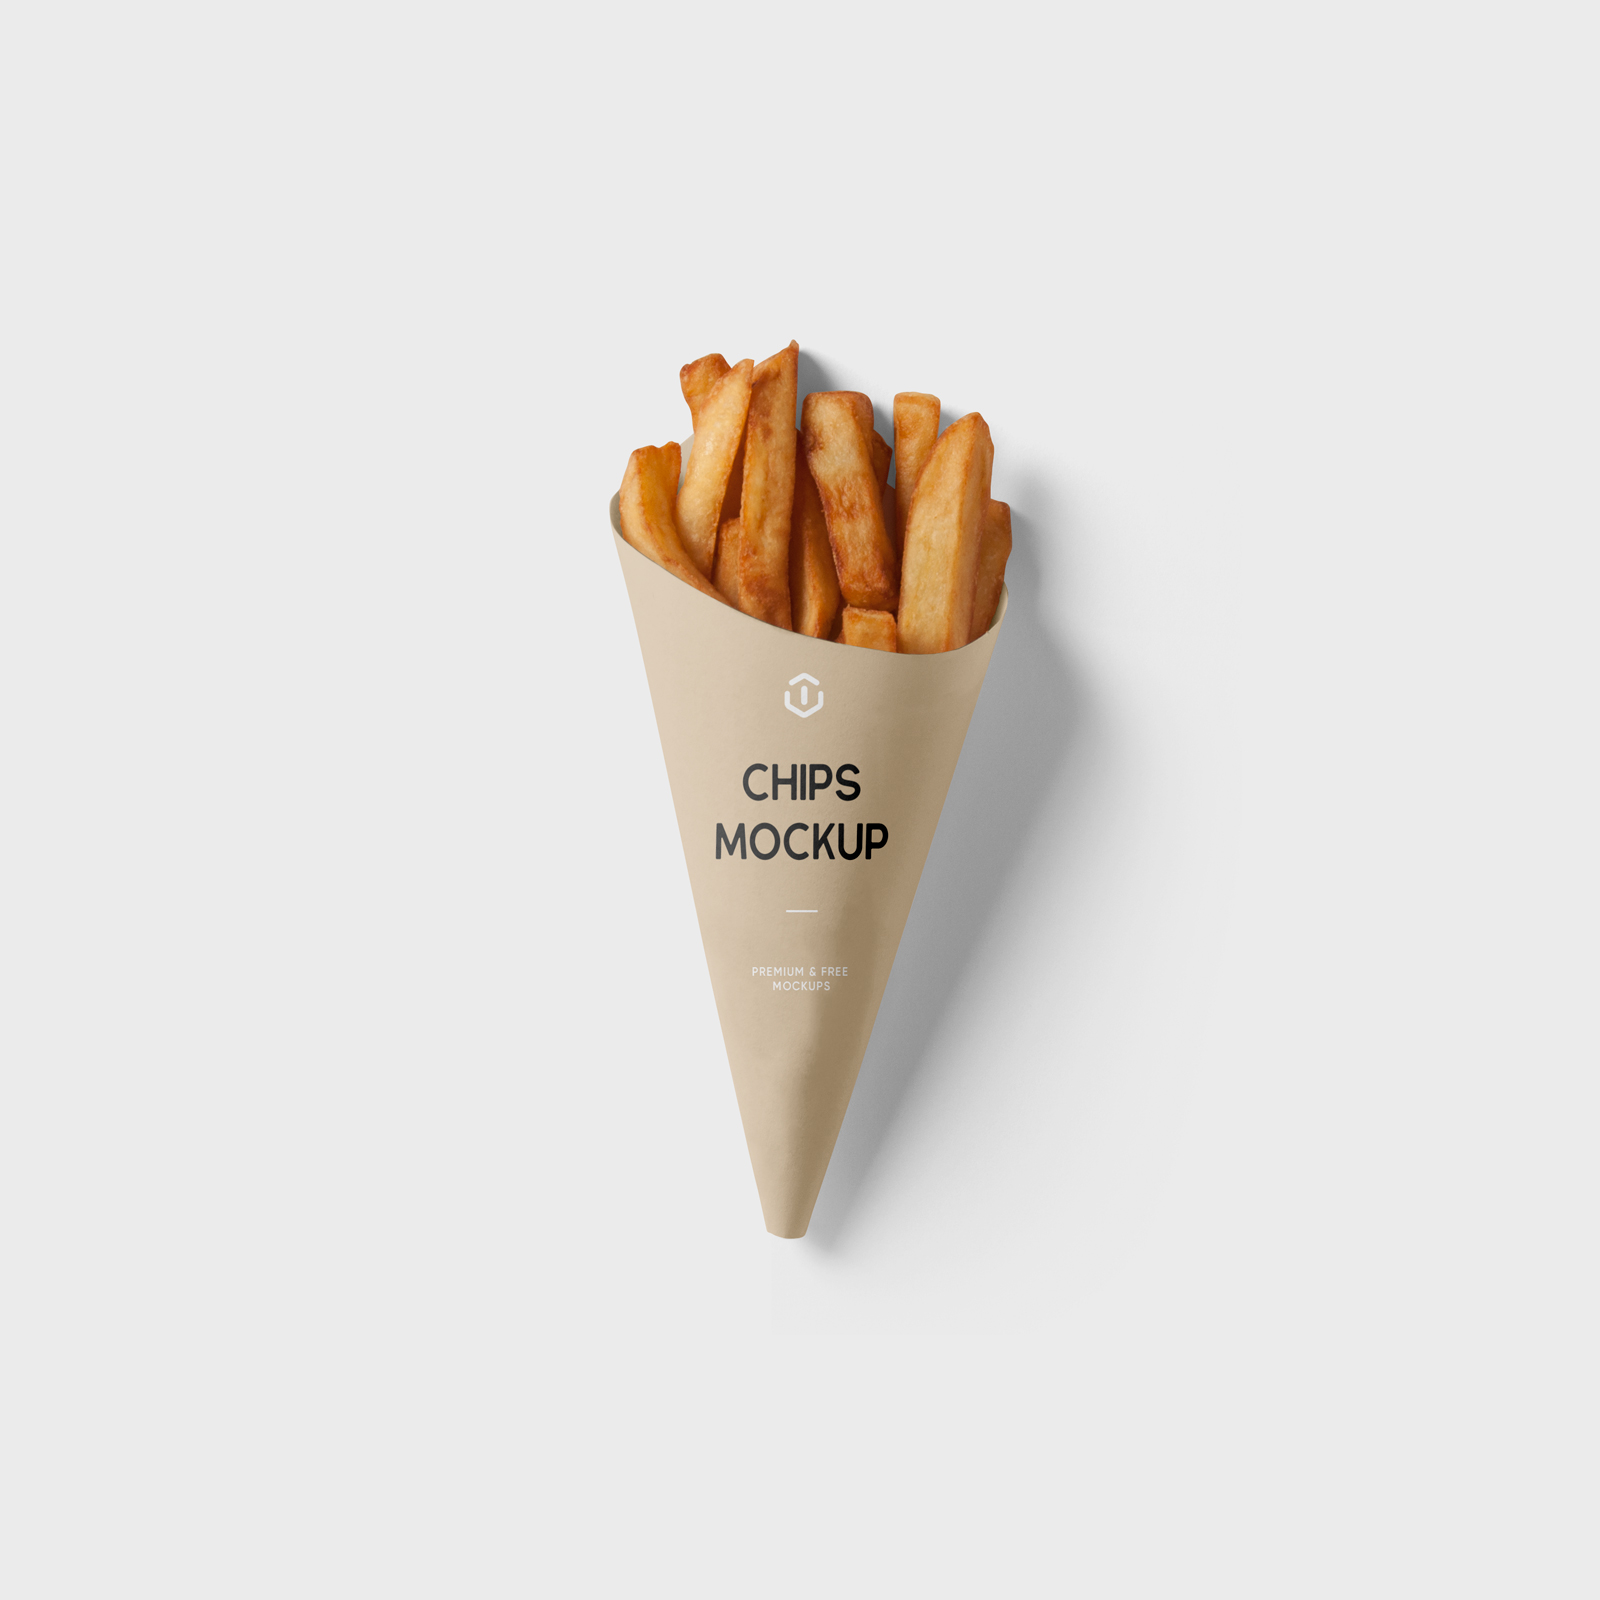 高质量薯条包装样机模型Chips Mockup .psd素材